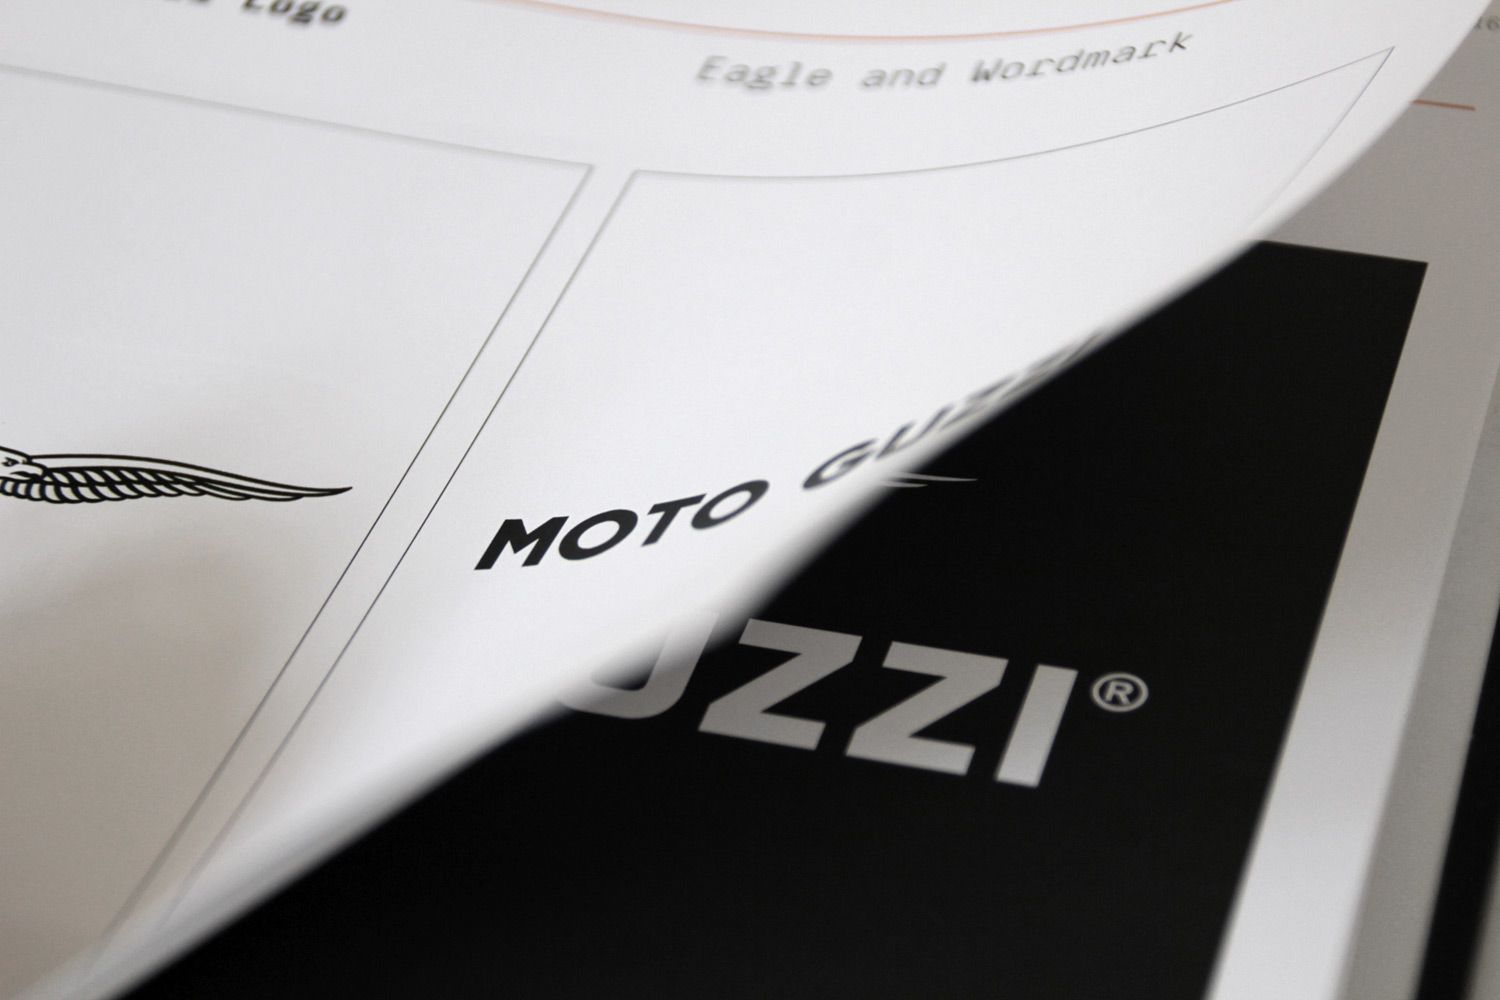 moto guzzi brand book